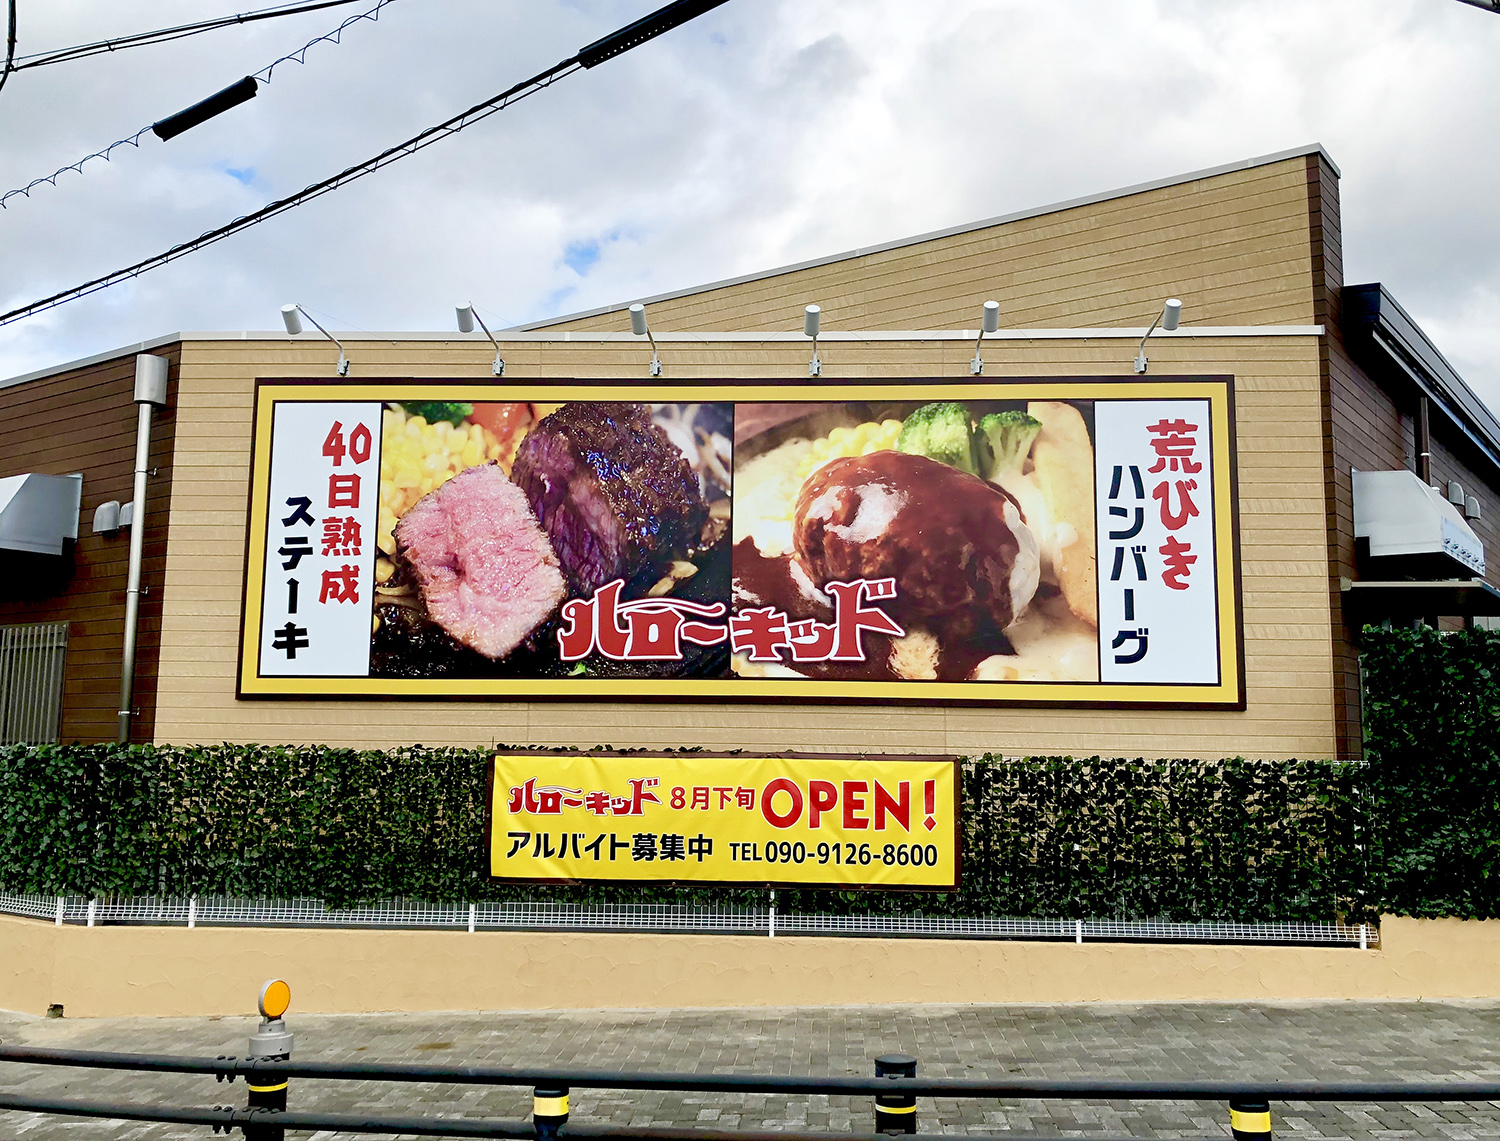 料理写真で訴求する壁面サイン 愛知県東海市